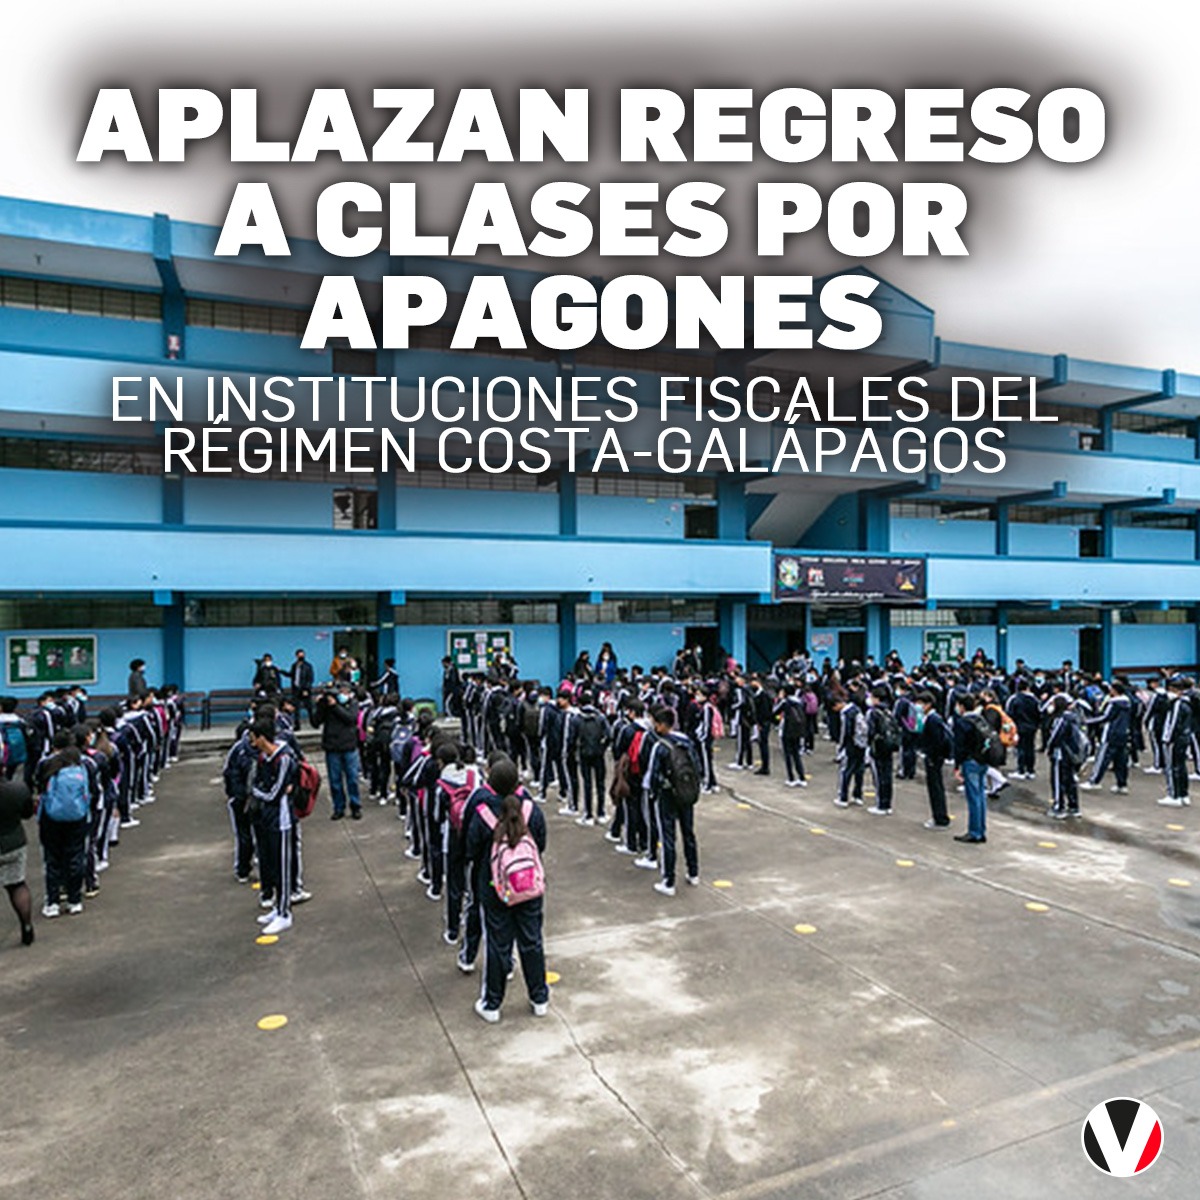 El Ministerio de Educación ha anunciado el aplazamiento del regreso a clases en las instituciones educativas fiscales del régimen Costa-Galápagos, debido a los apagones. Este es el cronograma: v.vistazo.com/3w94ldh